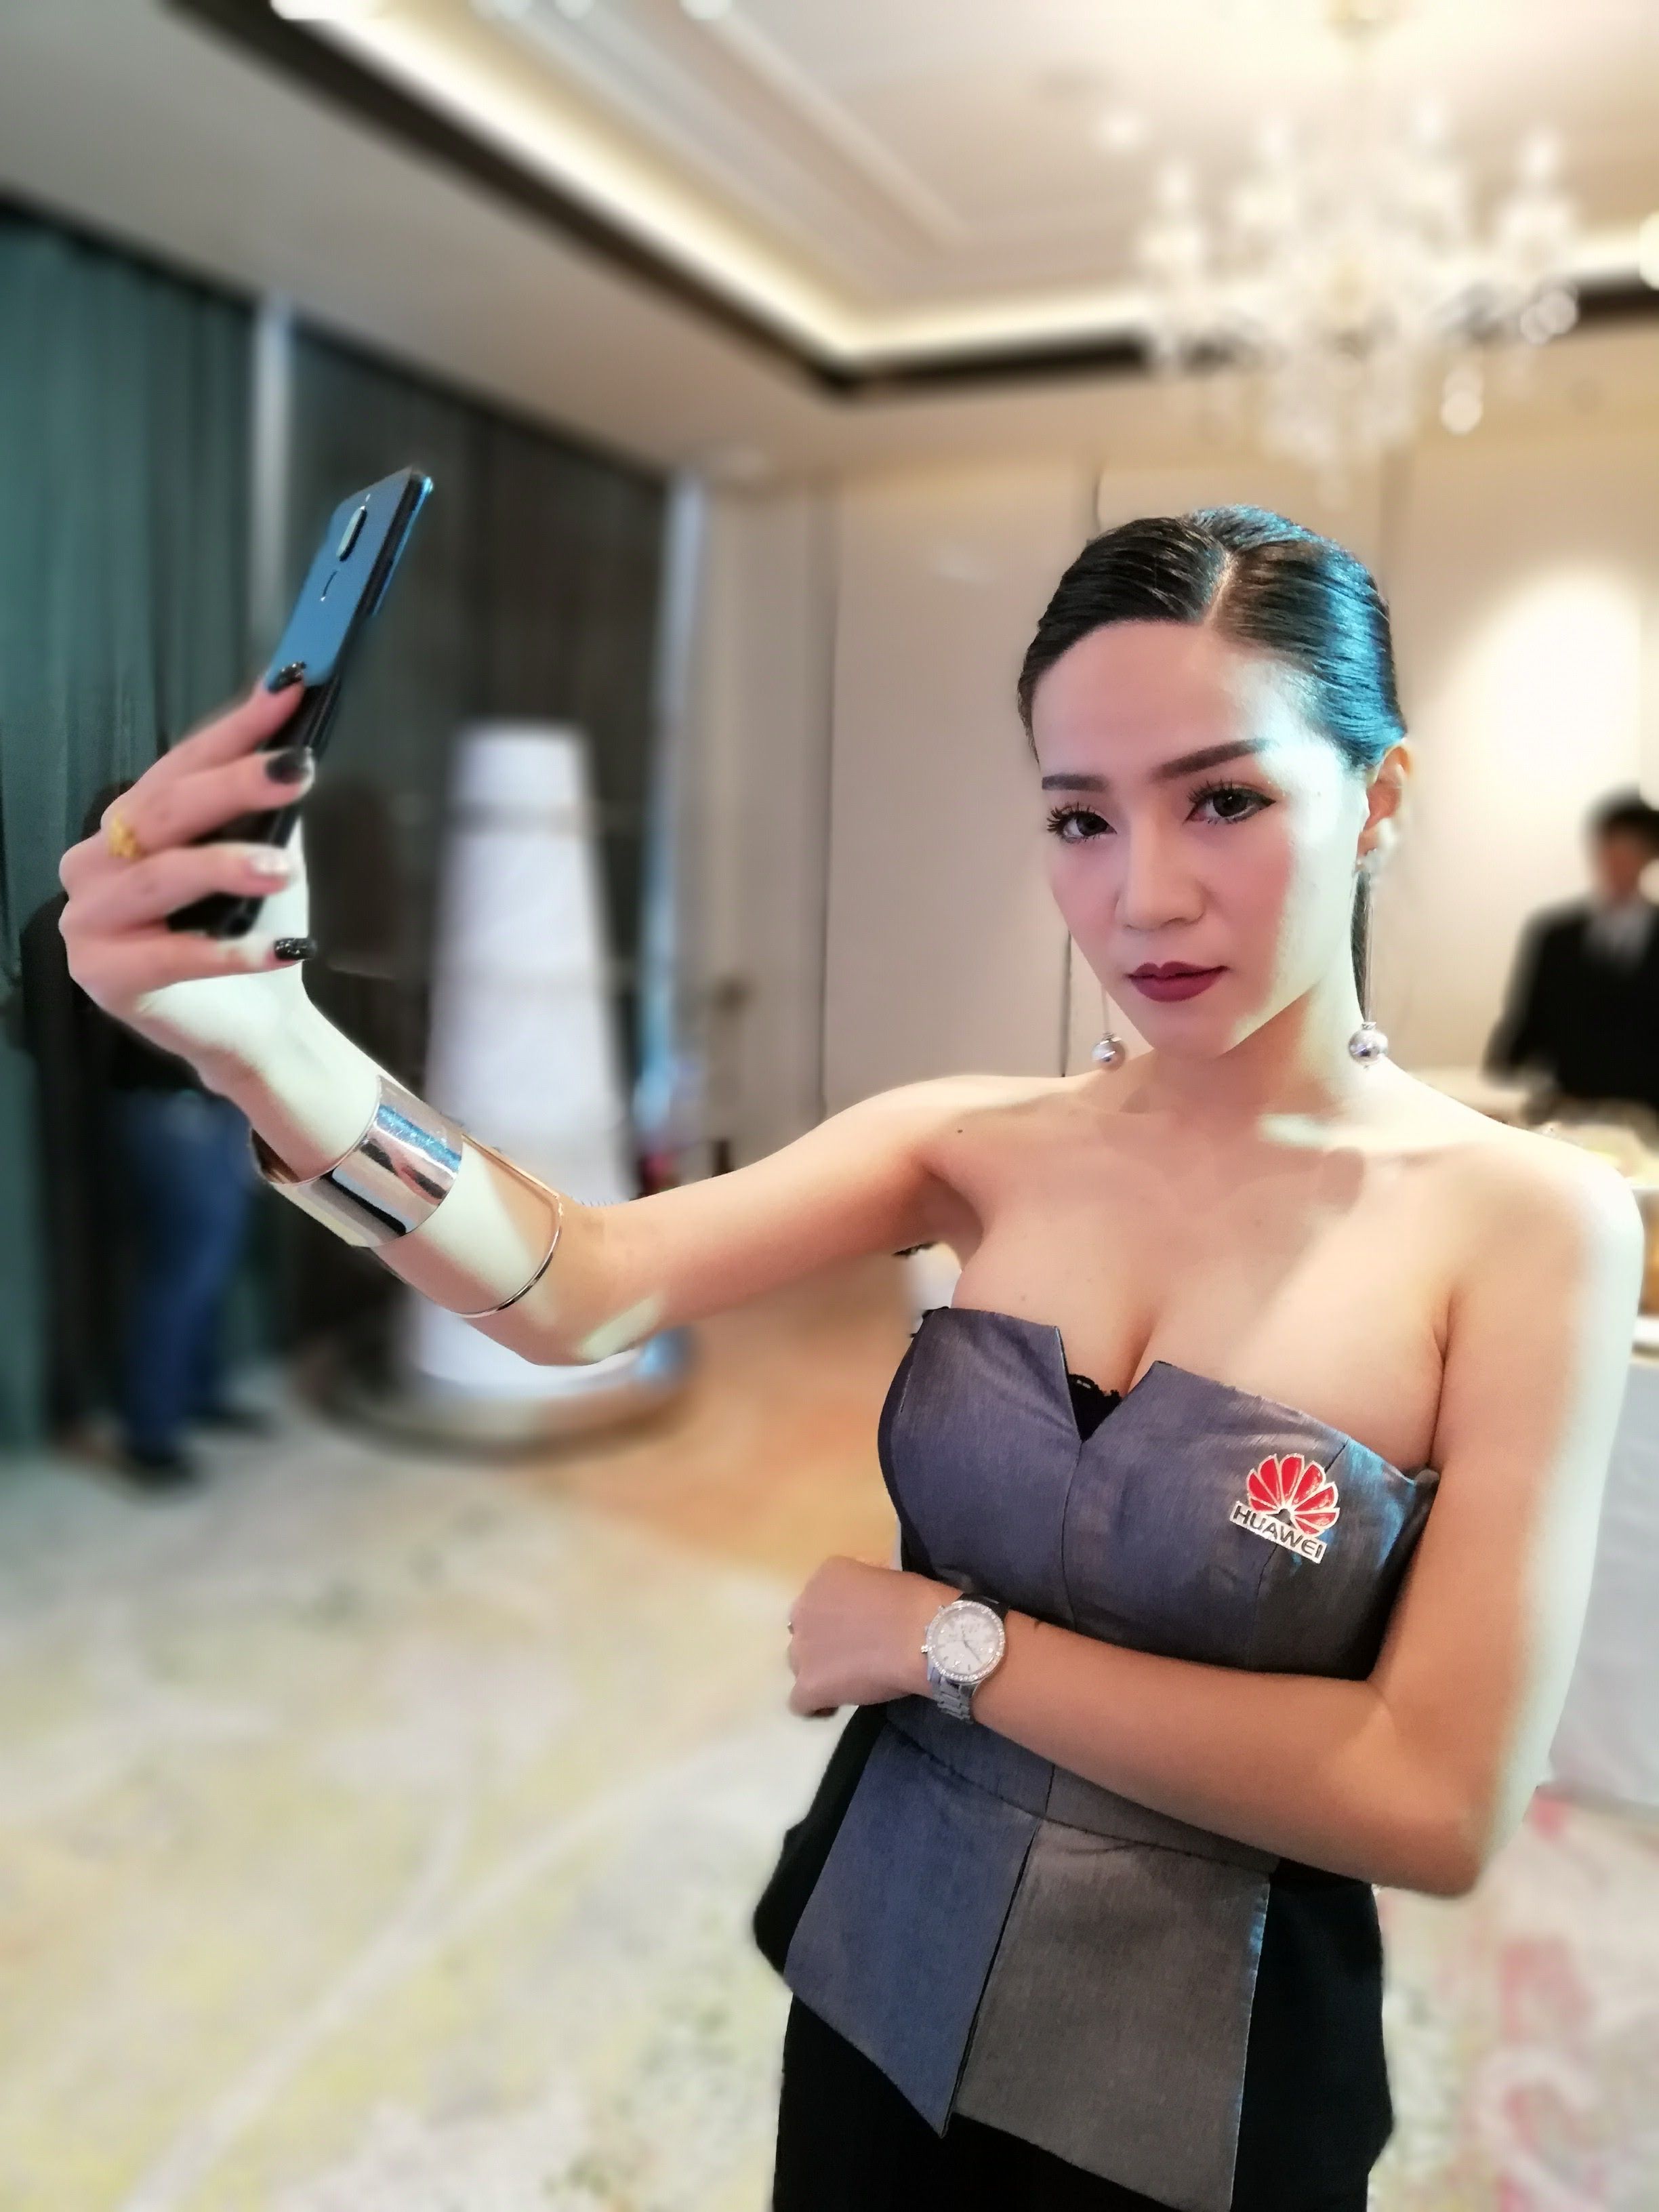 [Preview] พรีวิว Huawei nova 2i มือถือ 4 กล้อง จอยาวขอบบาง ในราคา 10,900 บาท